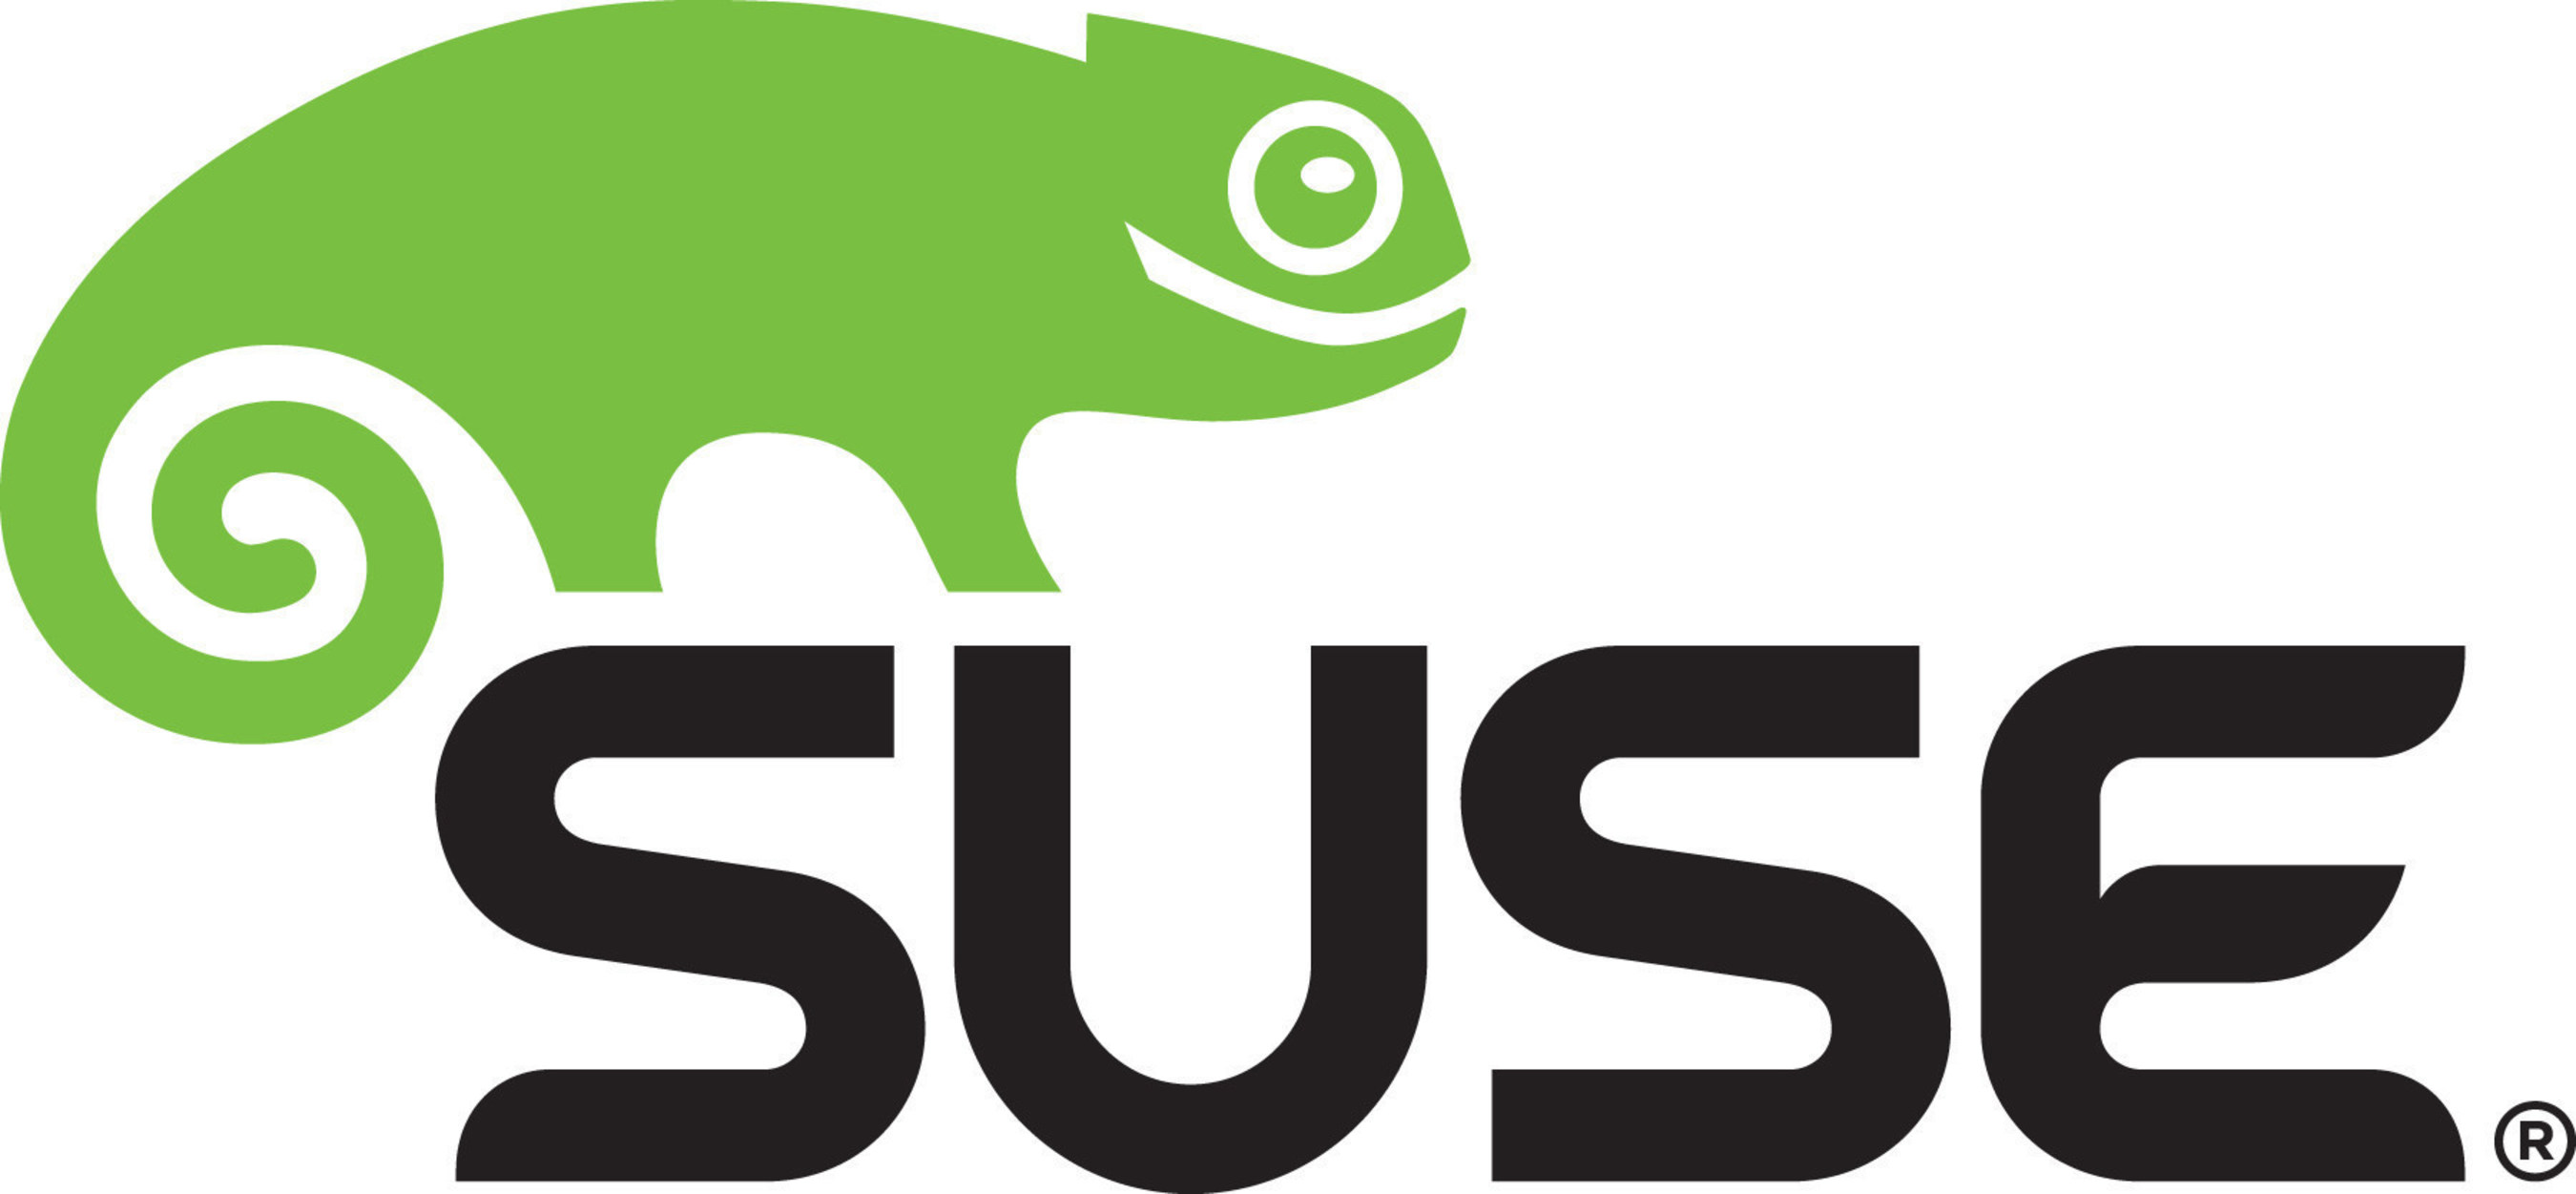 USE Logo